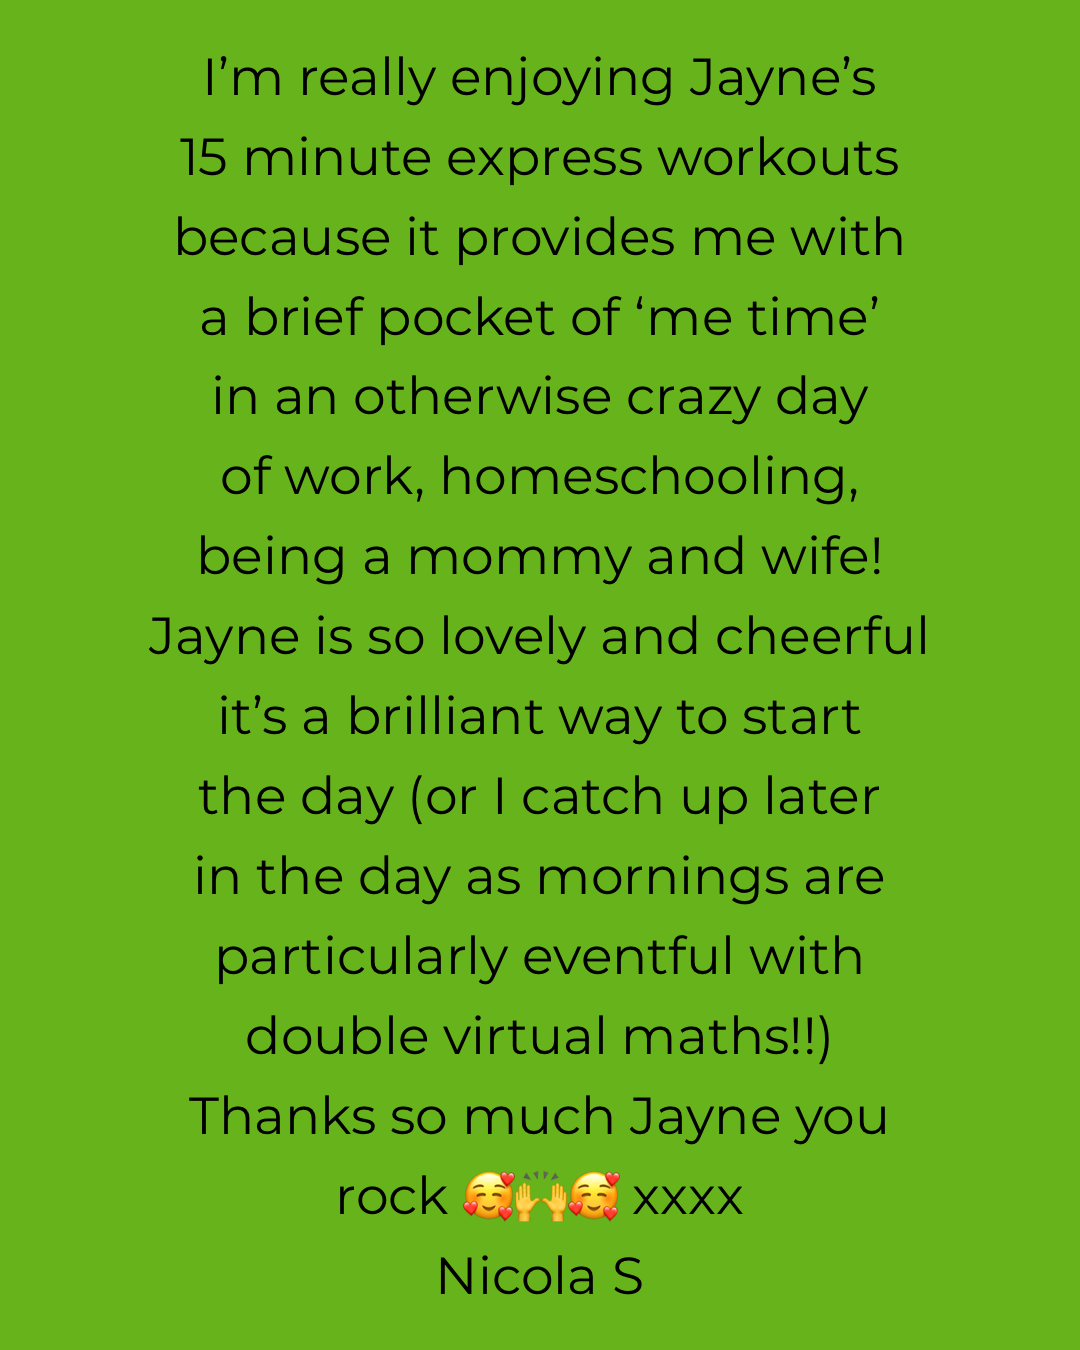 Jayne Wetton Fitness